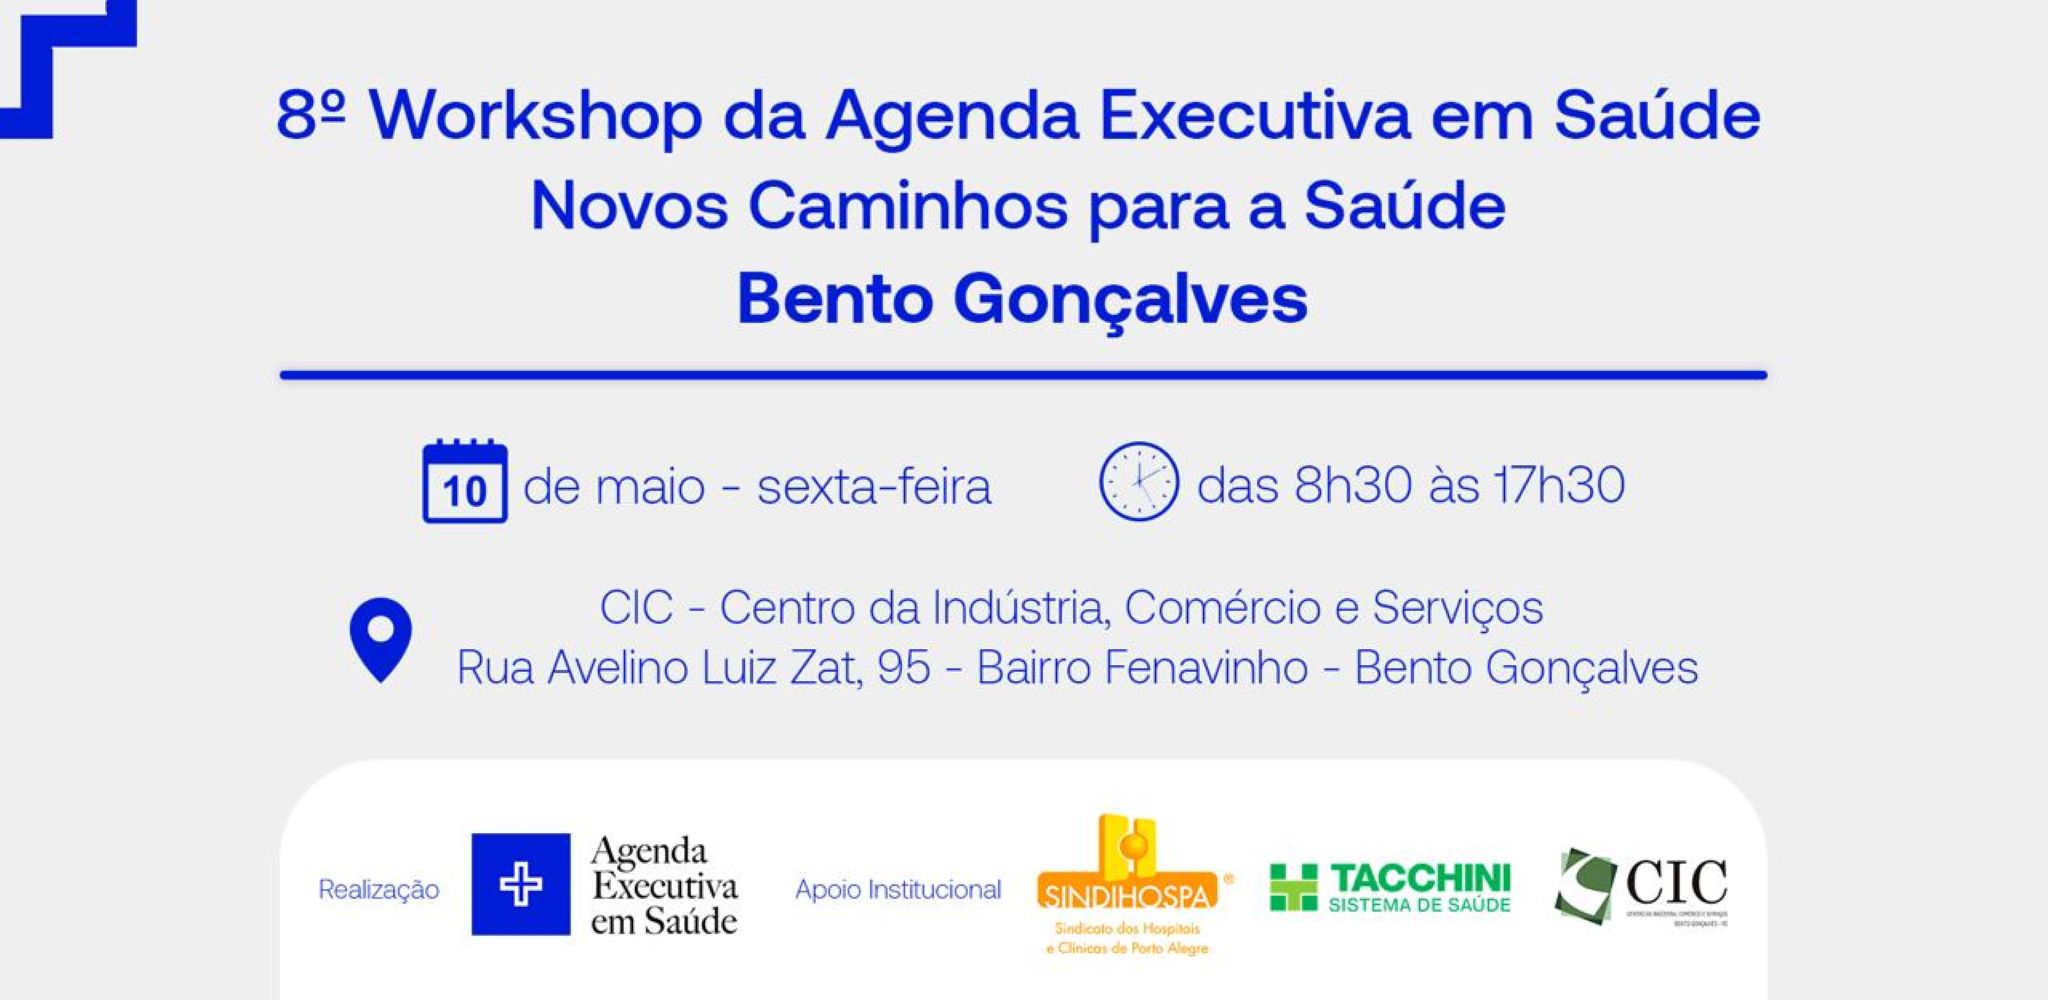 8º Workshop da Agenda Executiva em Saúde - Novos Caminhos para a Saúde - Bento Gonçalves